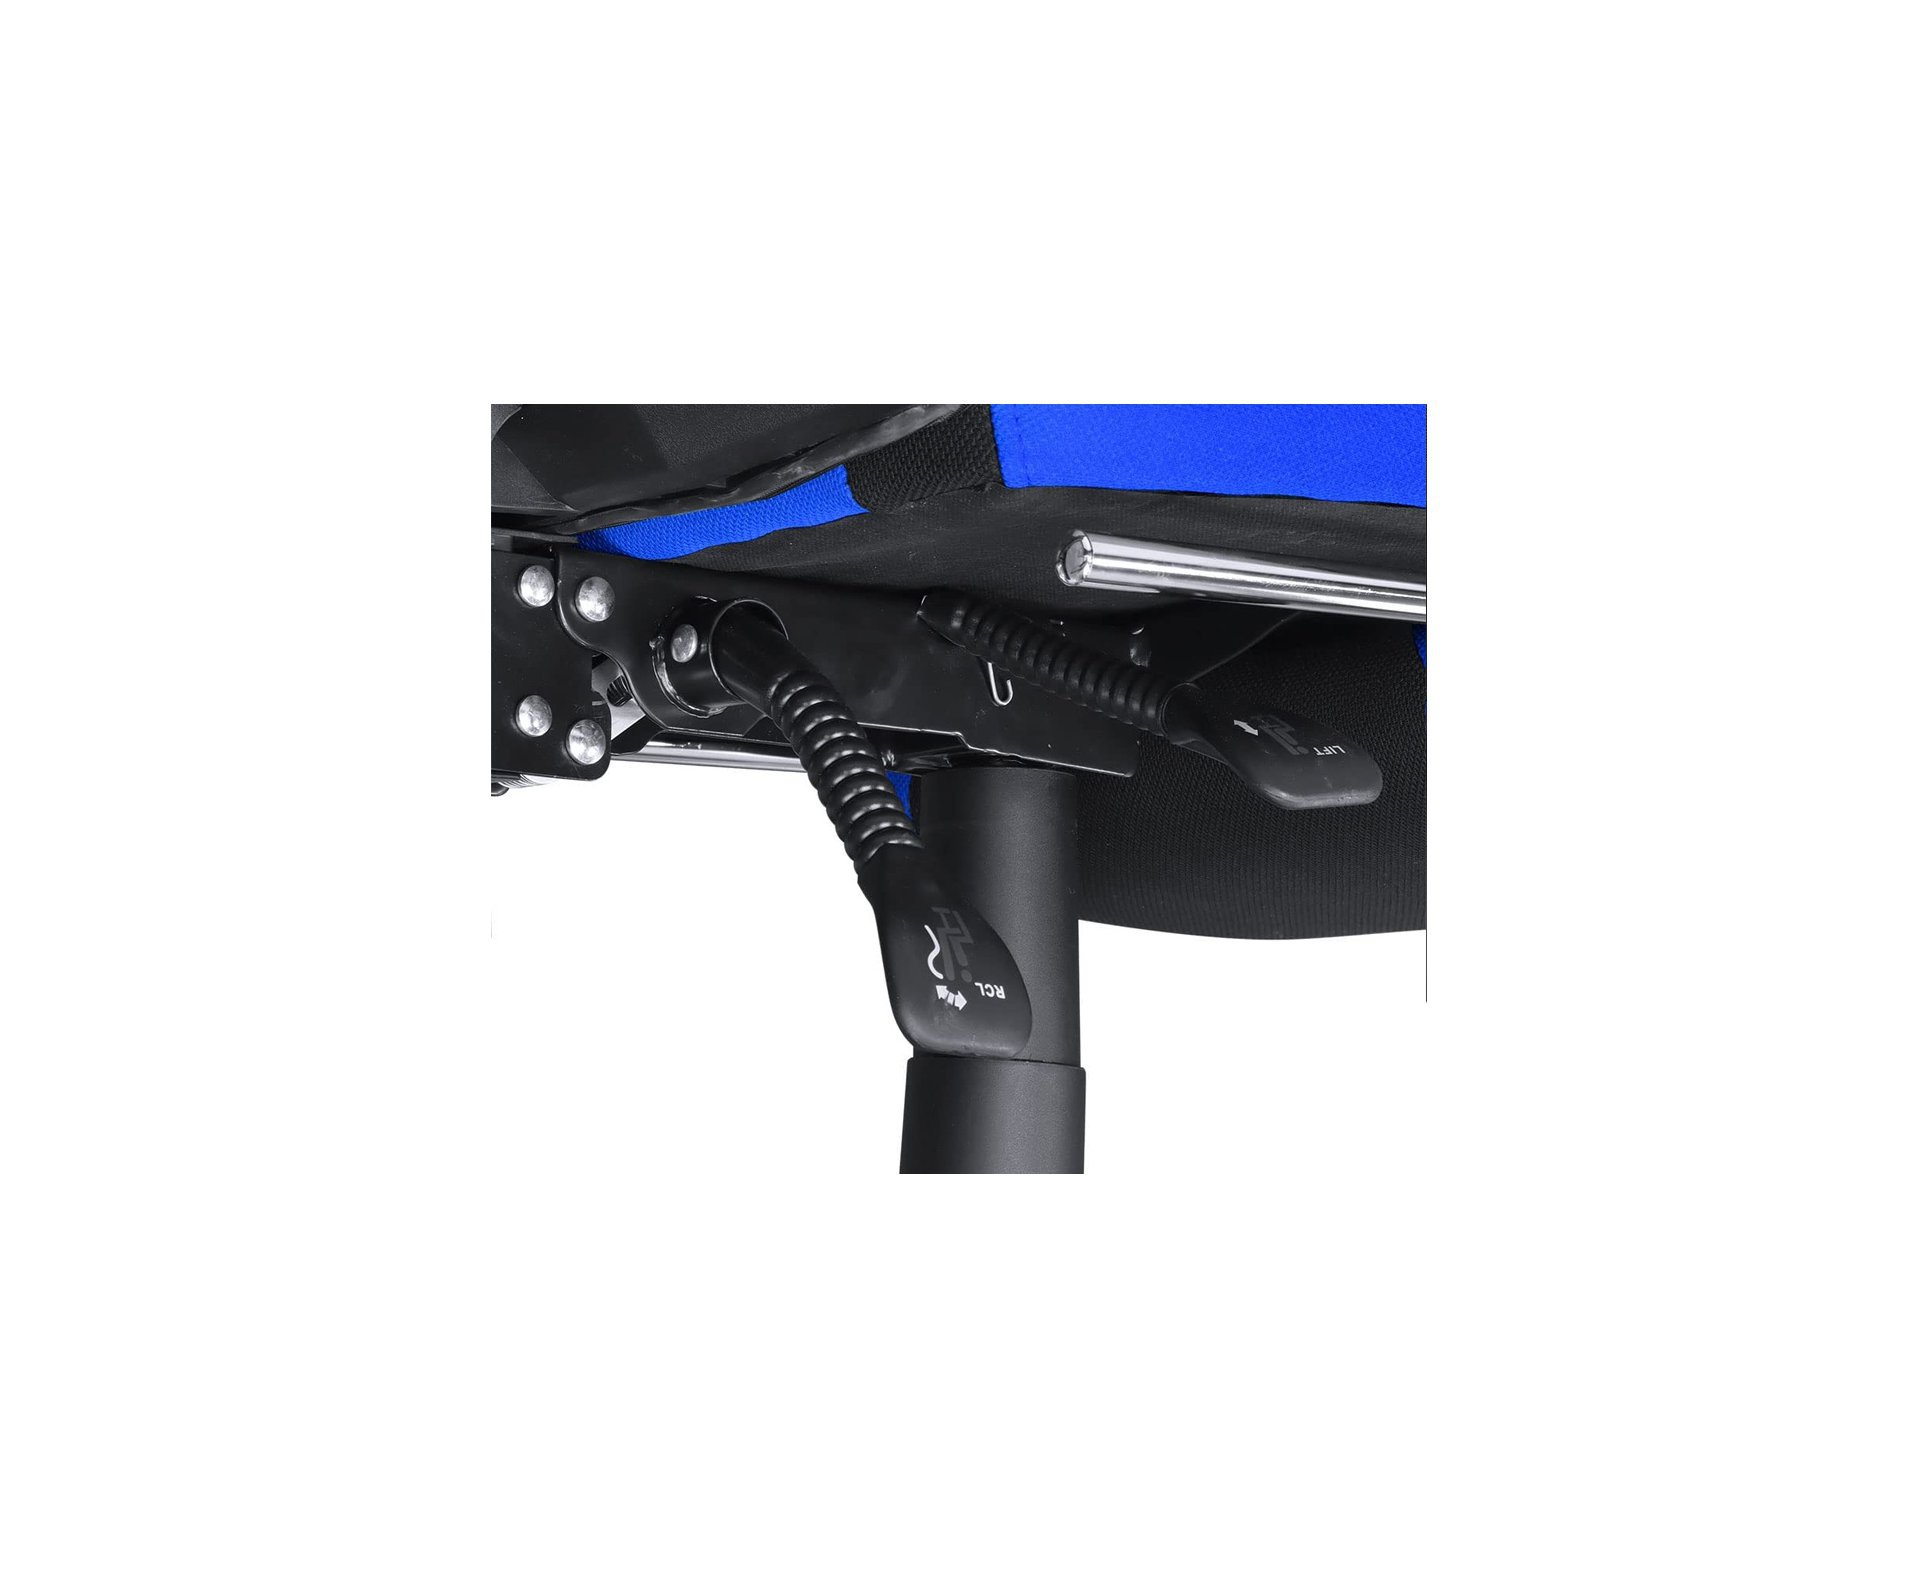 Cadeira Gamer Rocket Preta com Azul - CGR10PAZ